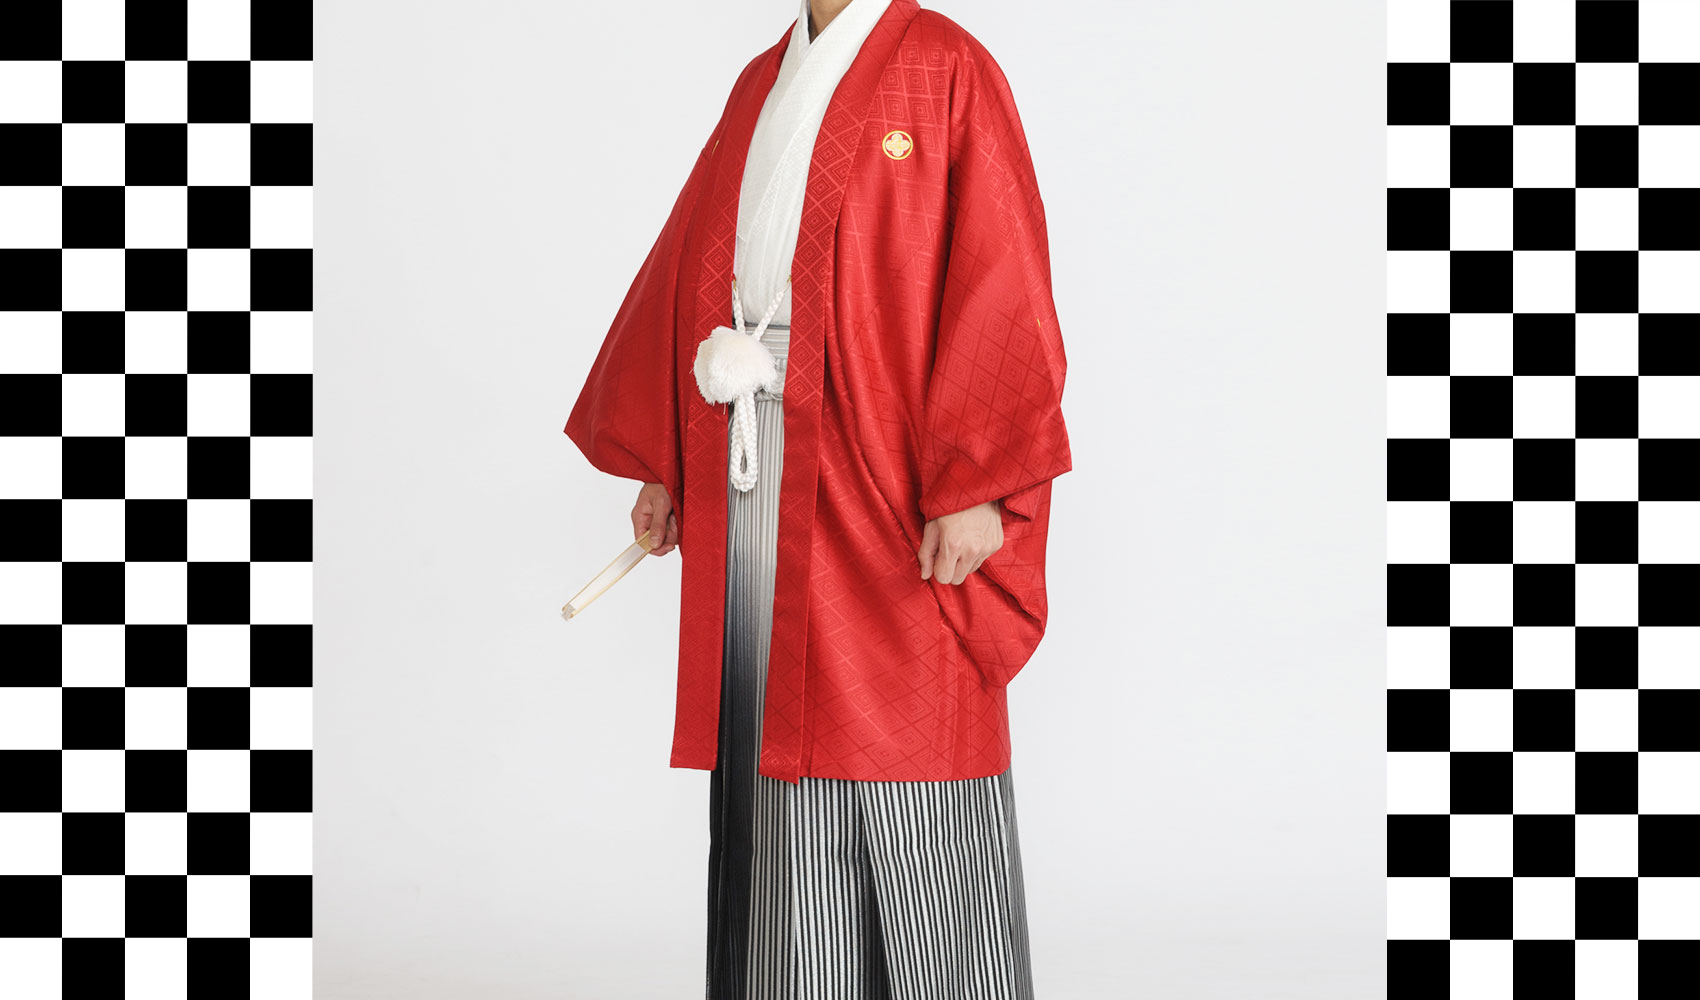 男性袴コレクション1。羽織が赤、着物が白、袴が銀黒ぼかしのコーデ